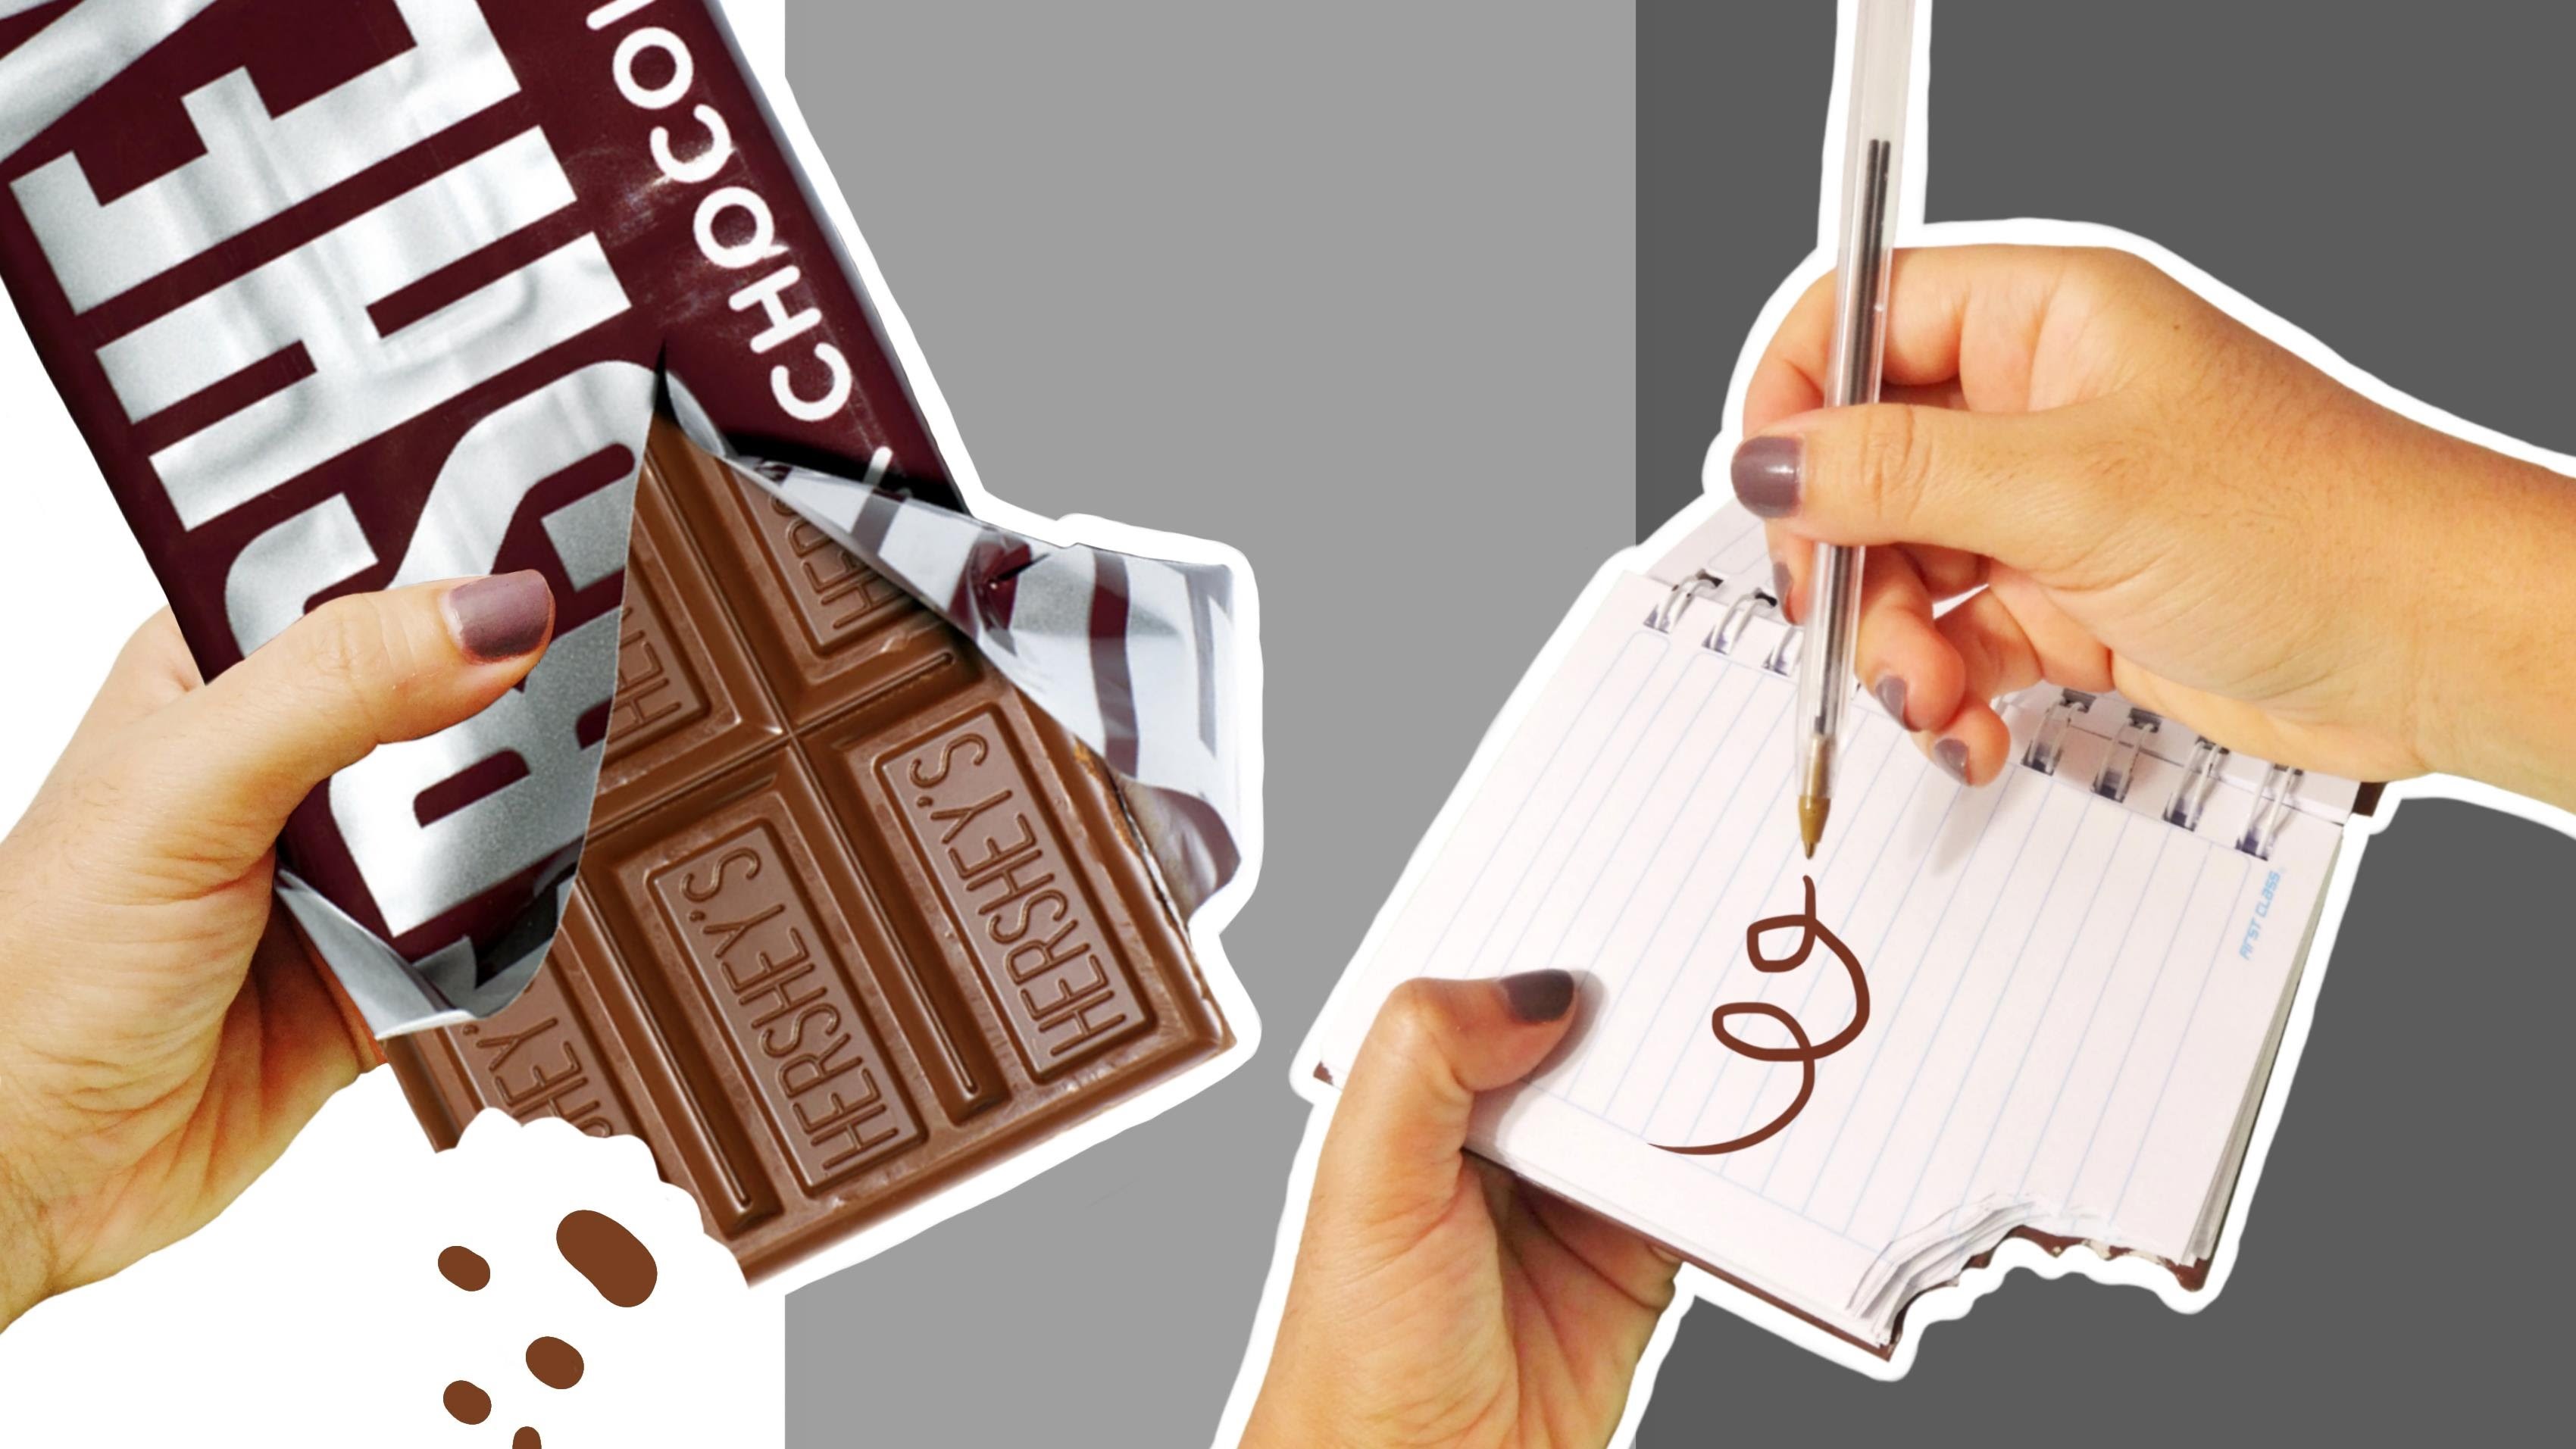 Haz Una Libreta de Chocolate! Manualidades Kawaii y Faciles